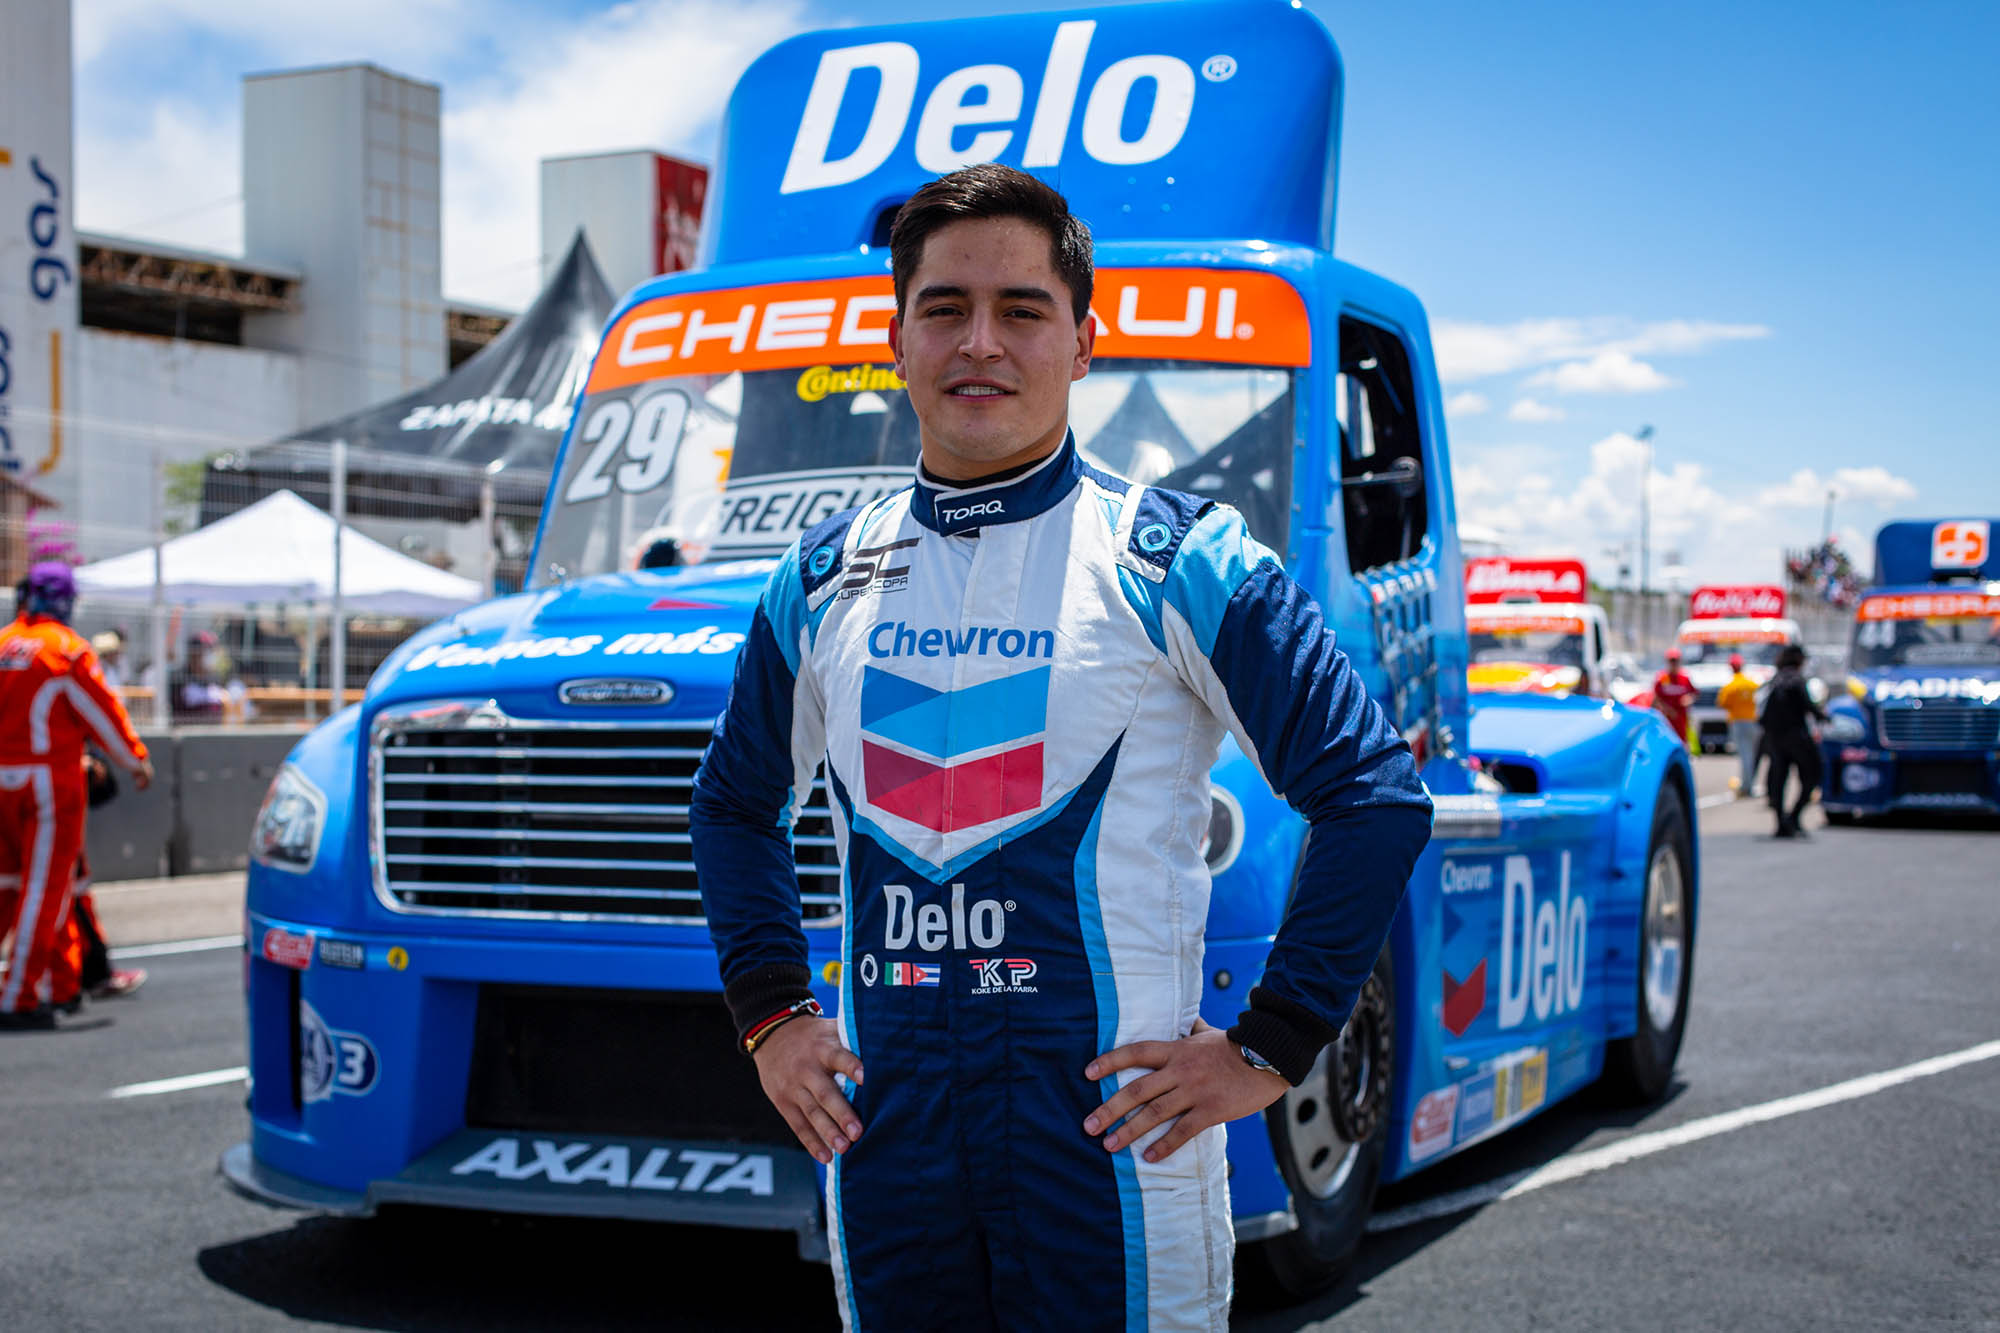 Top-5 en Querétaro para Jorge de la Parra y el Chevron DELO Racing Team, en los Tractocamiones